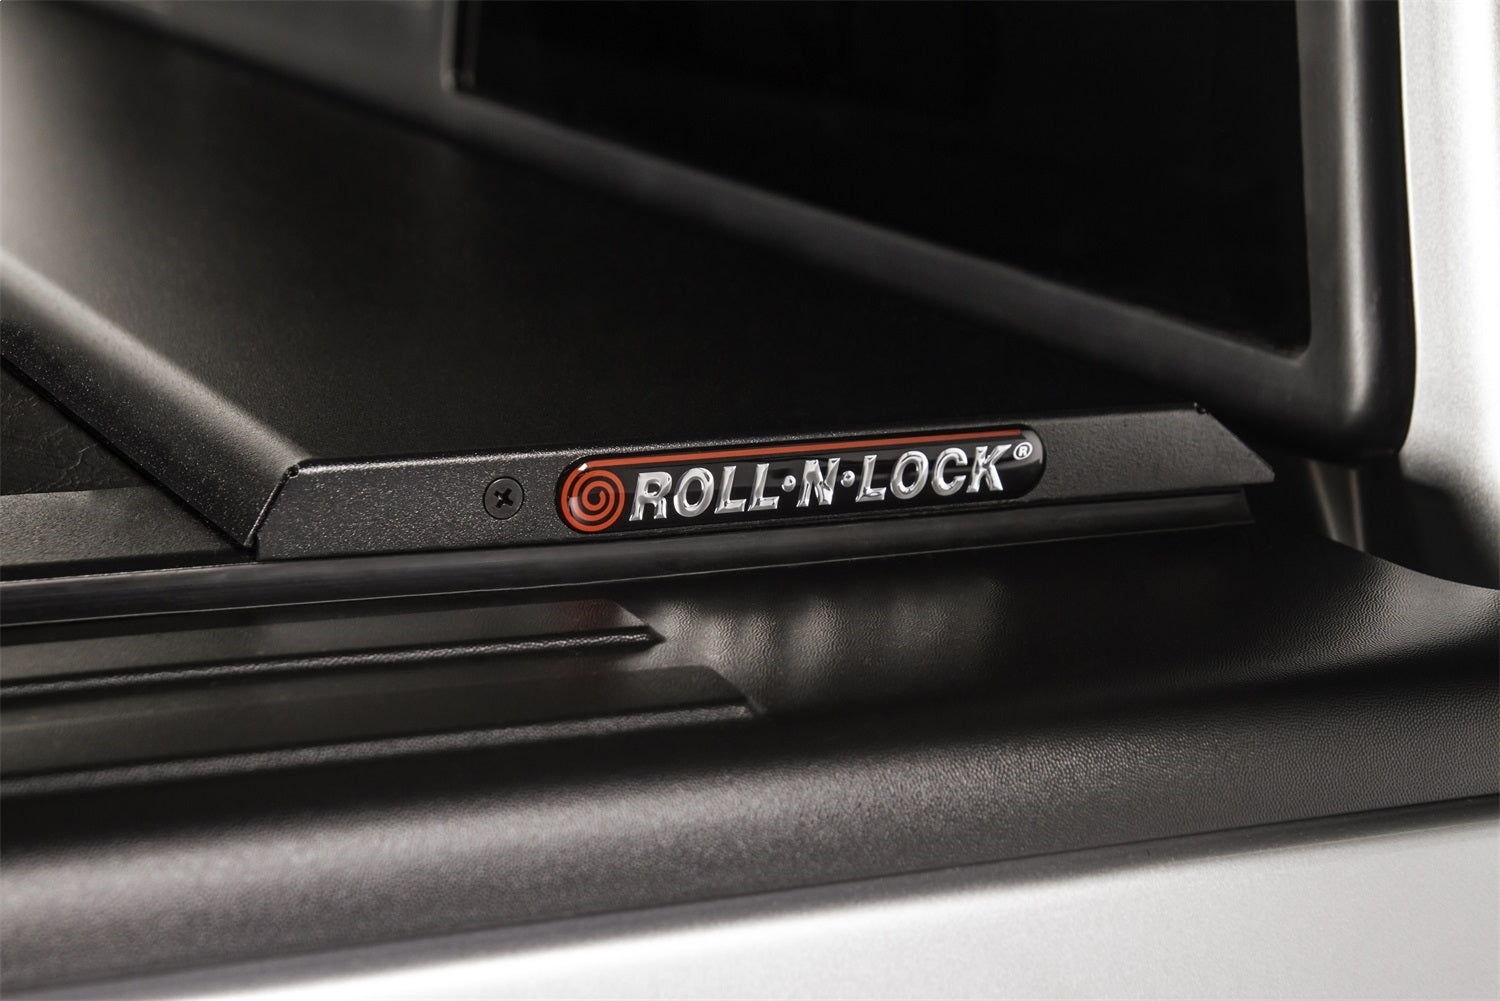 Roll-N-Lock LG102M Roll-N-Lock M-Series Truck Bed Cover Fits 15-20 F-150